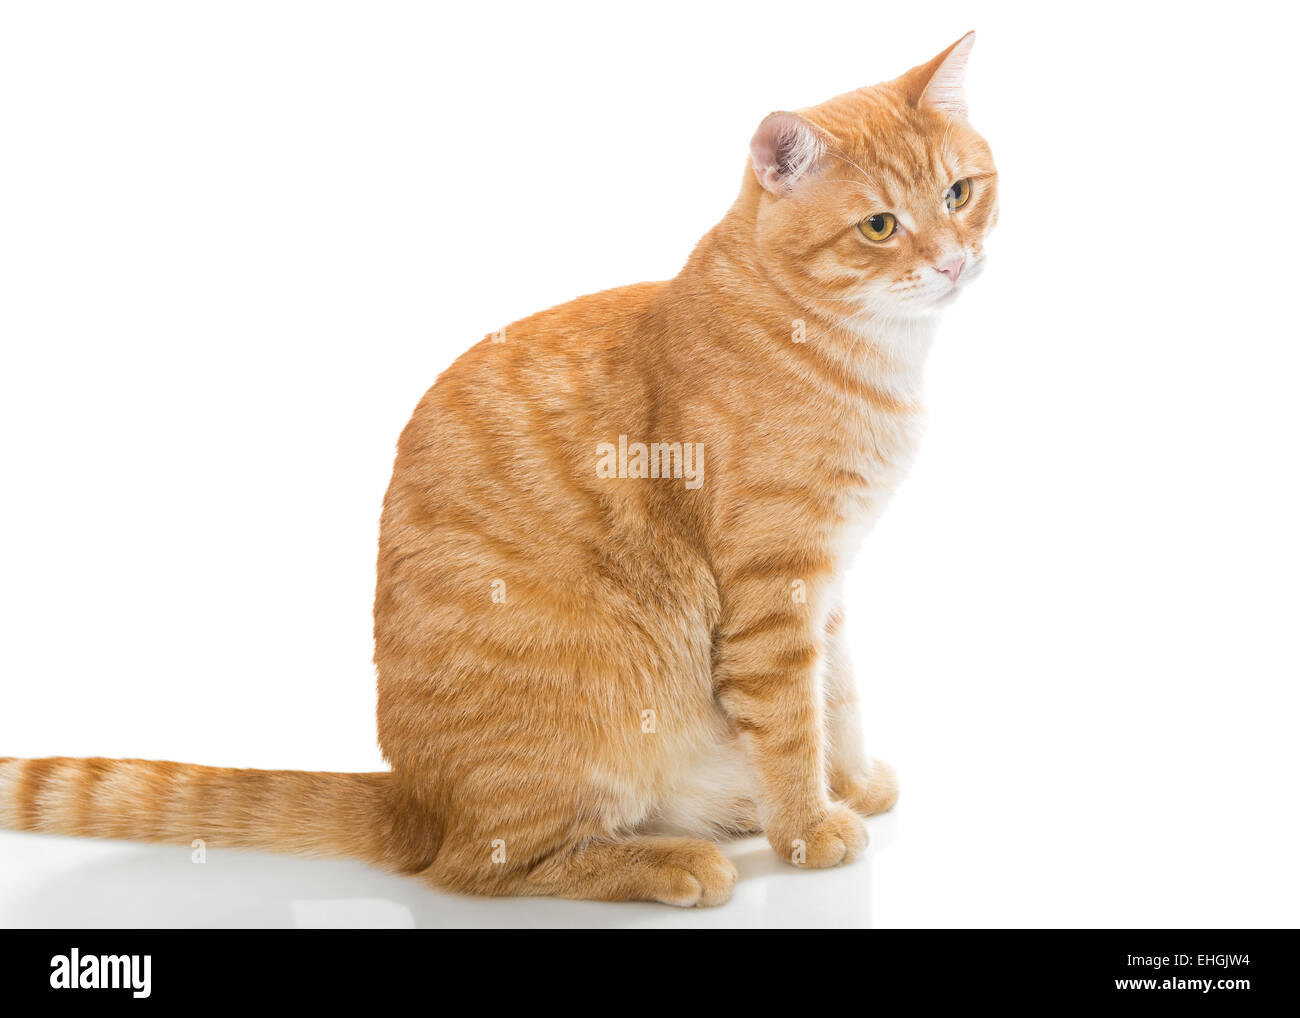 Beau chat orange, isolé sur fond blanc Banque D'Images